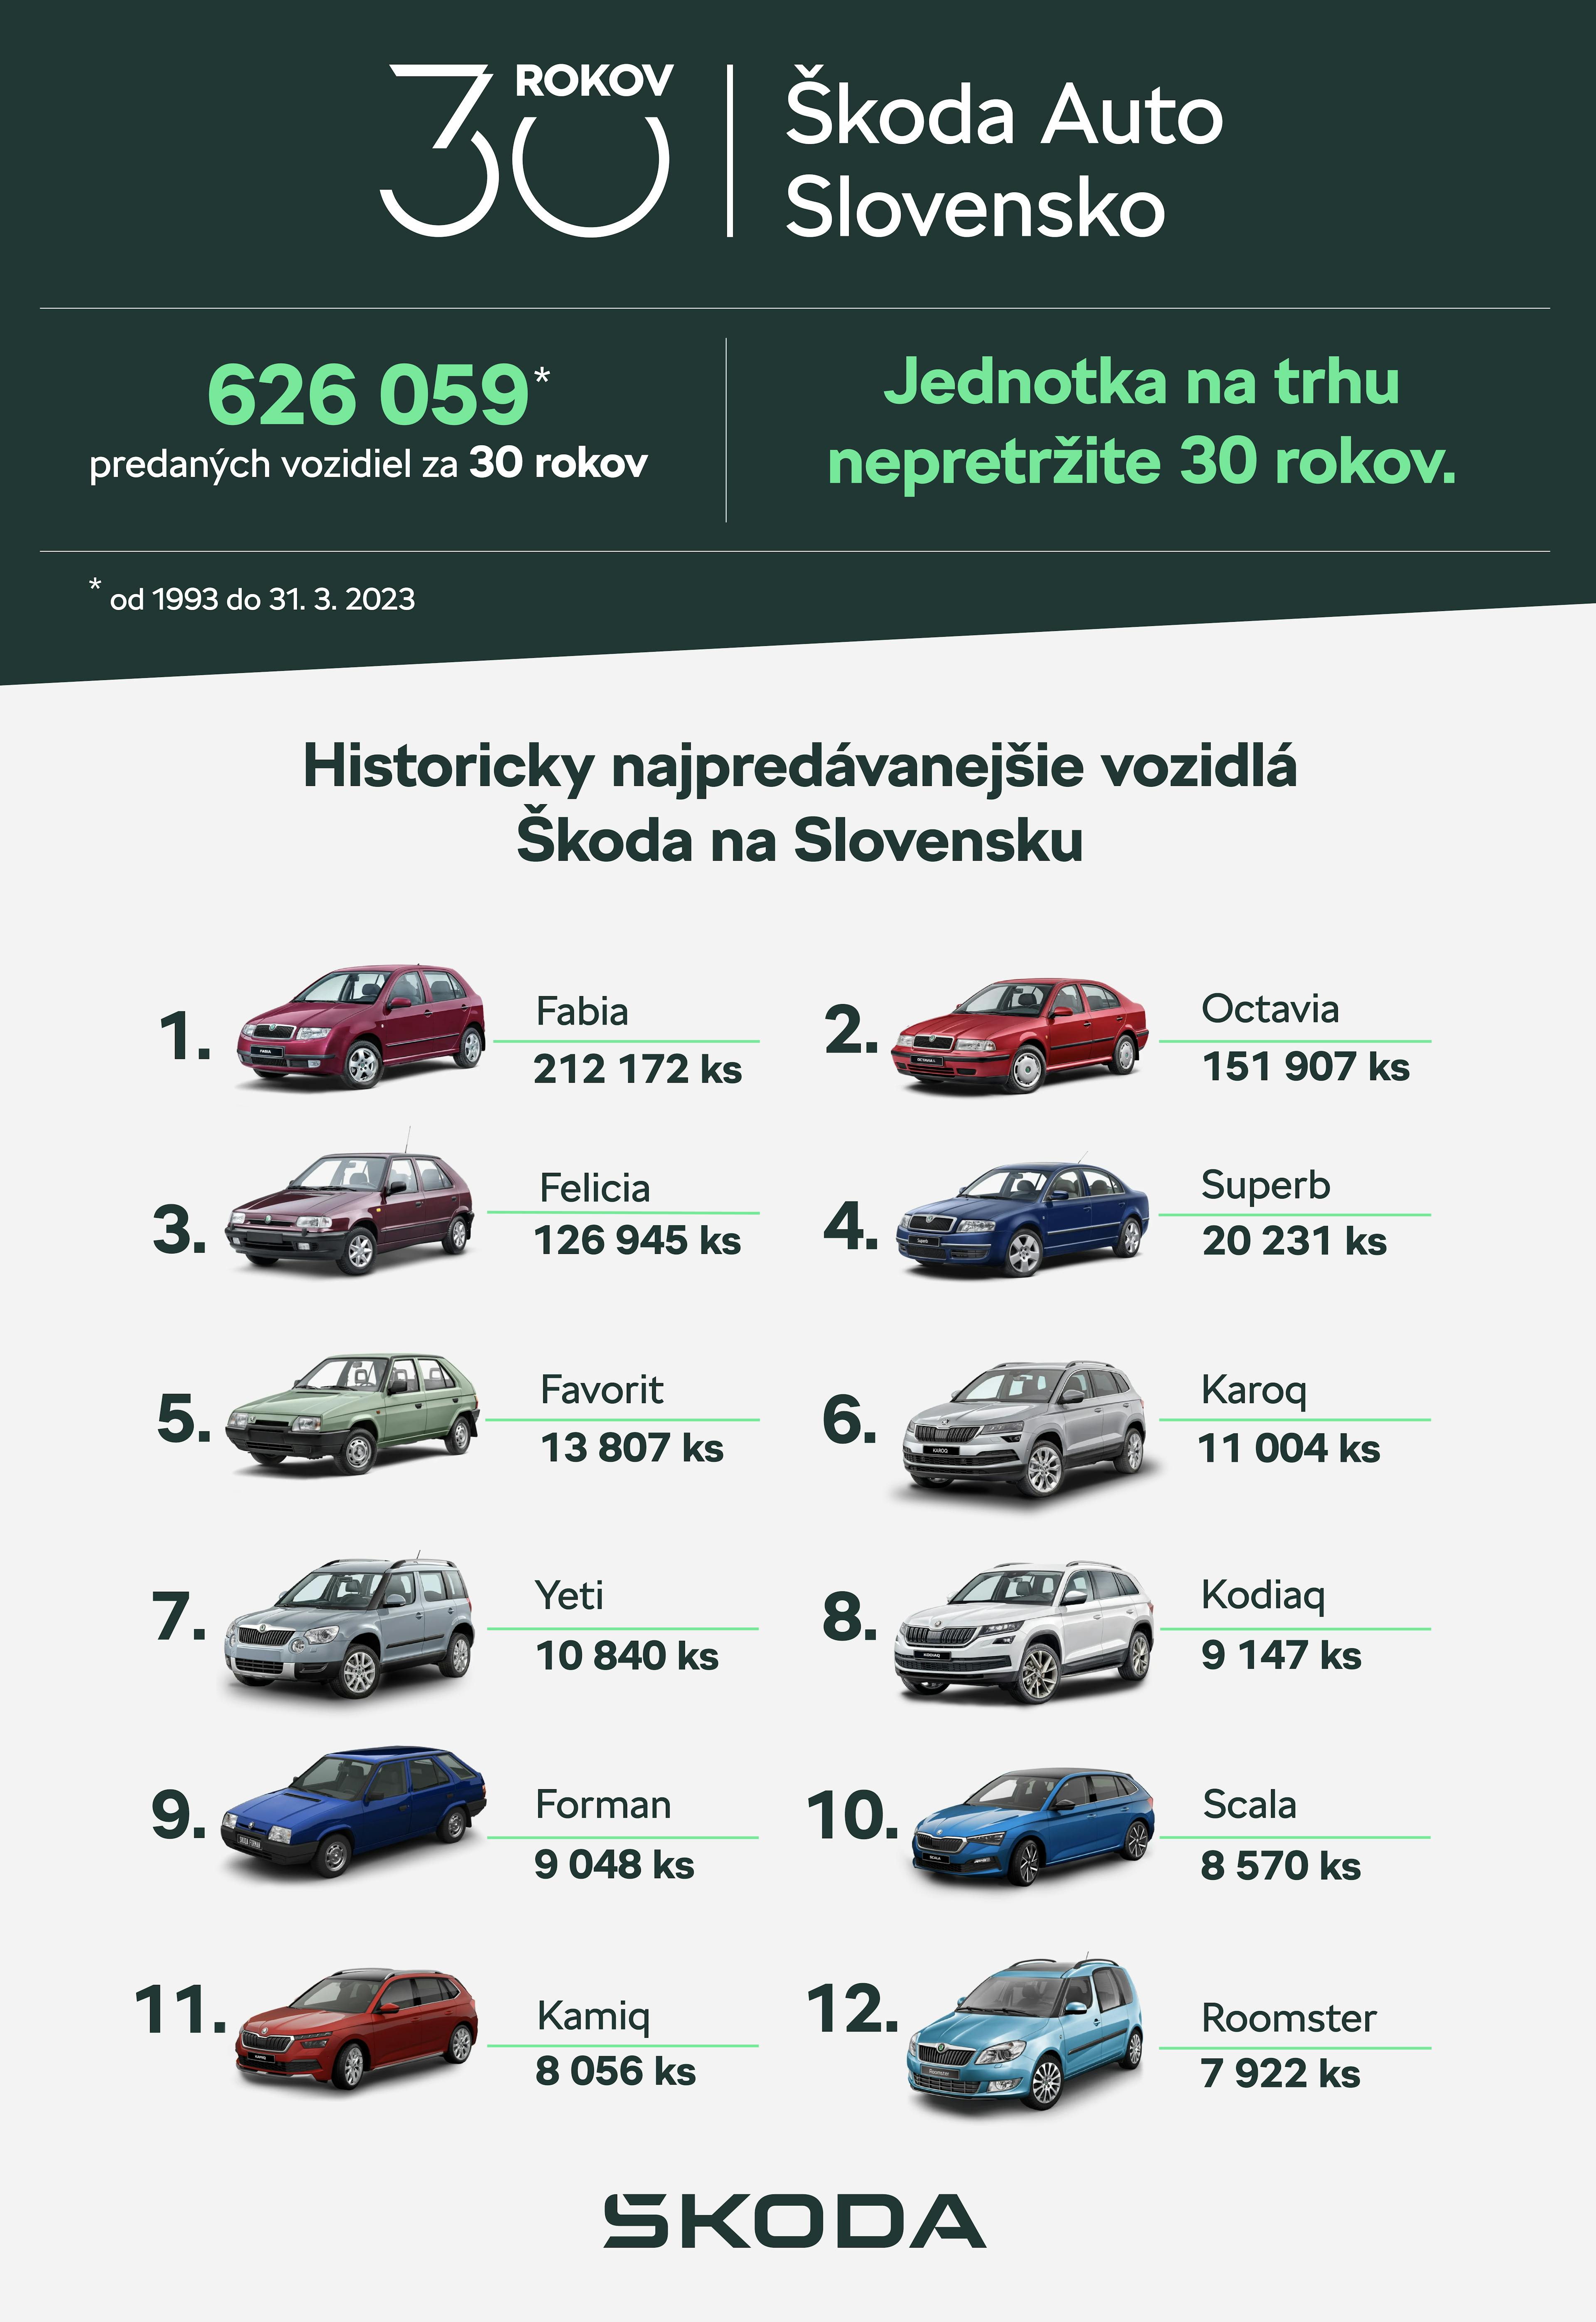 Druhým najobľúbenejším vozidlom je Octavia so 151 907 dodanými kusmi. Tretie miesto obsadil niekdajší rekordér – svojho času absolútna jednotka v predajoch – model Felicia, za ktorého volant si sadlo 126 945 majiteľov.